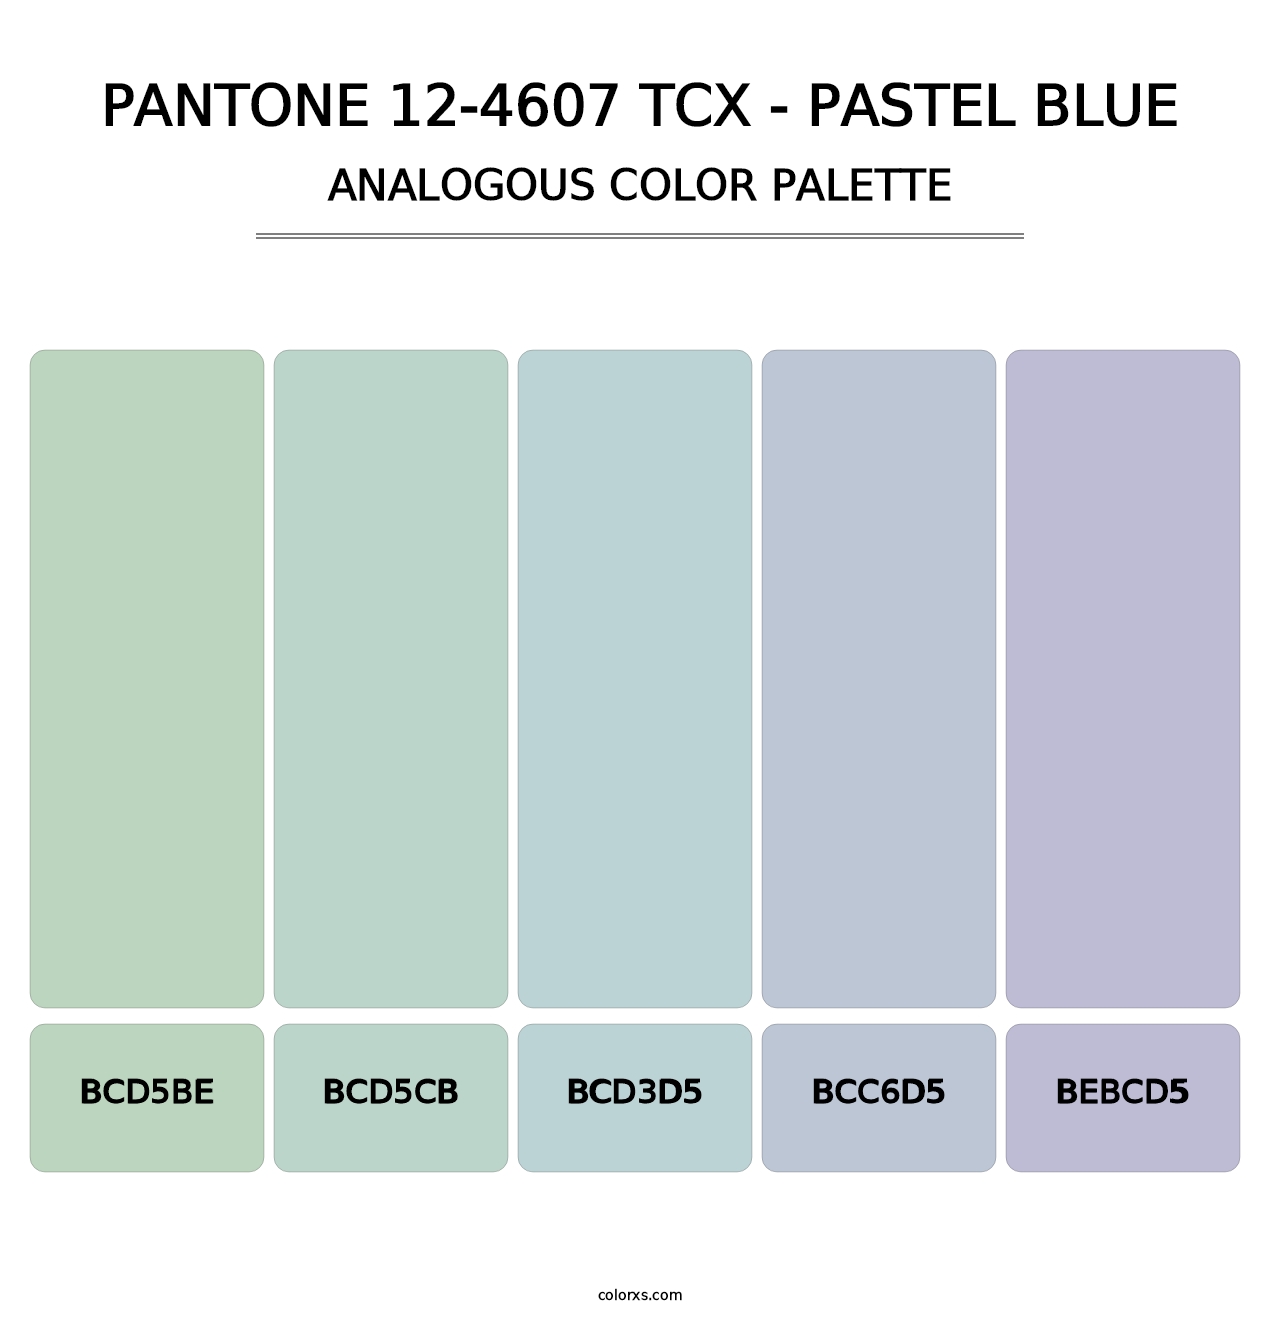 PANTONE 12-4607 TCX - Pastel Blue - Analogous Color Palette